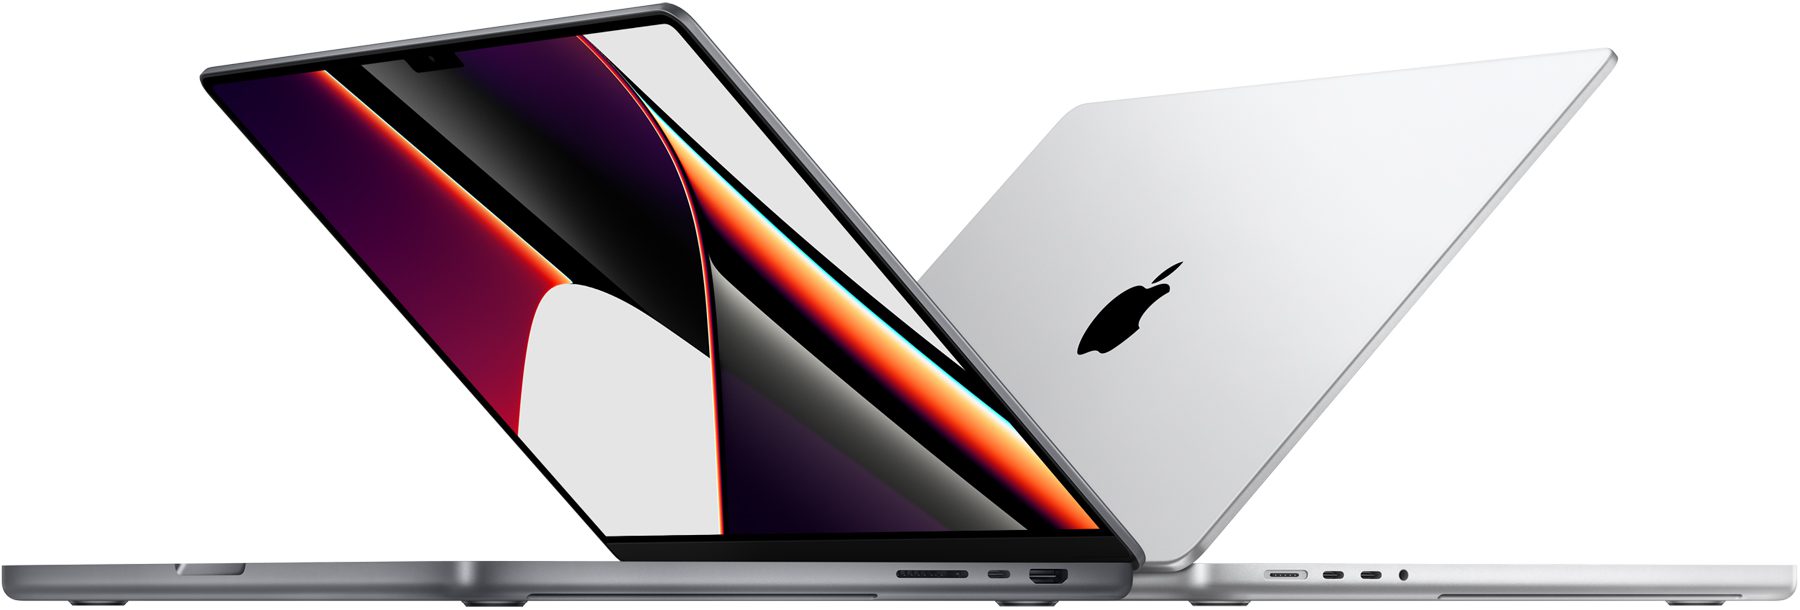 Dos MacBook Pro colocadas una contra la otra.